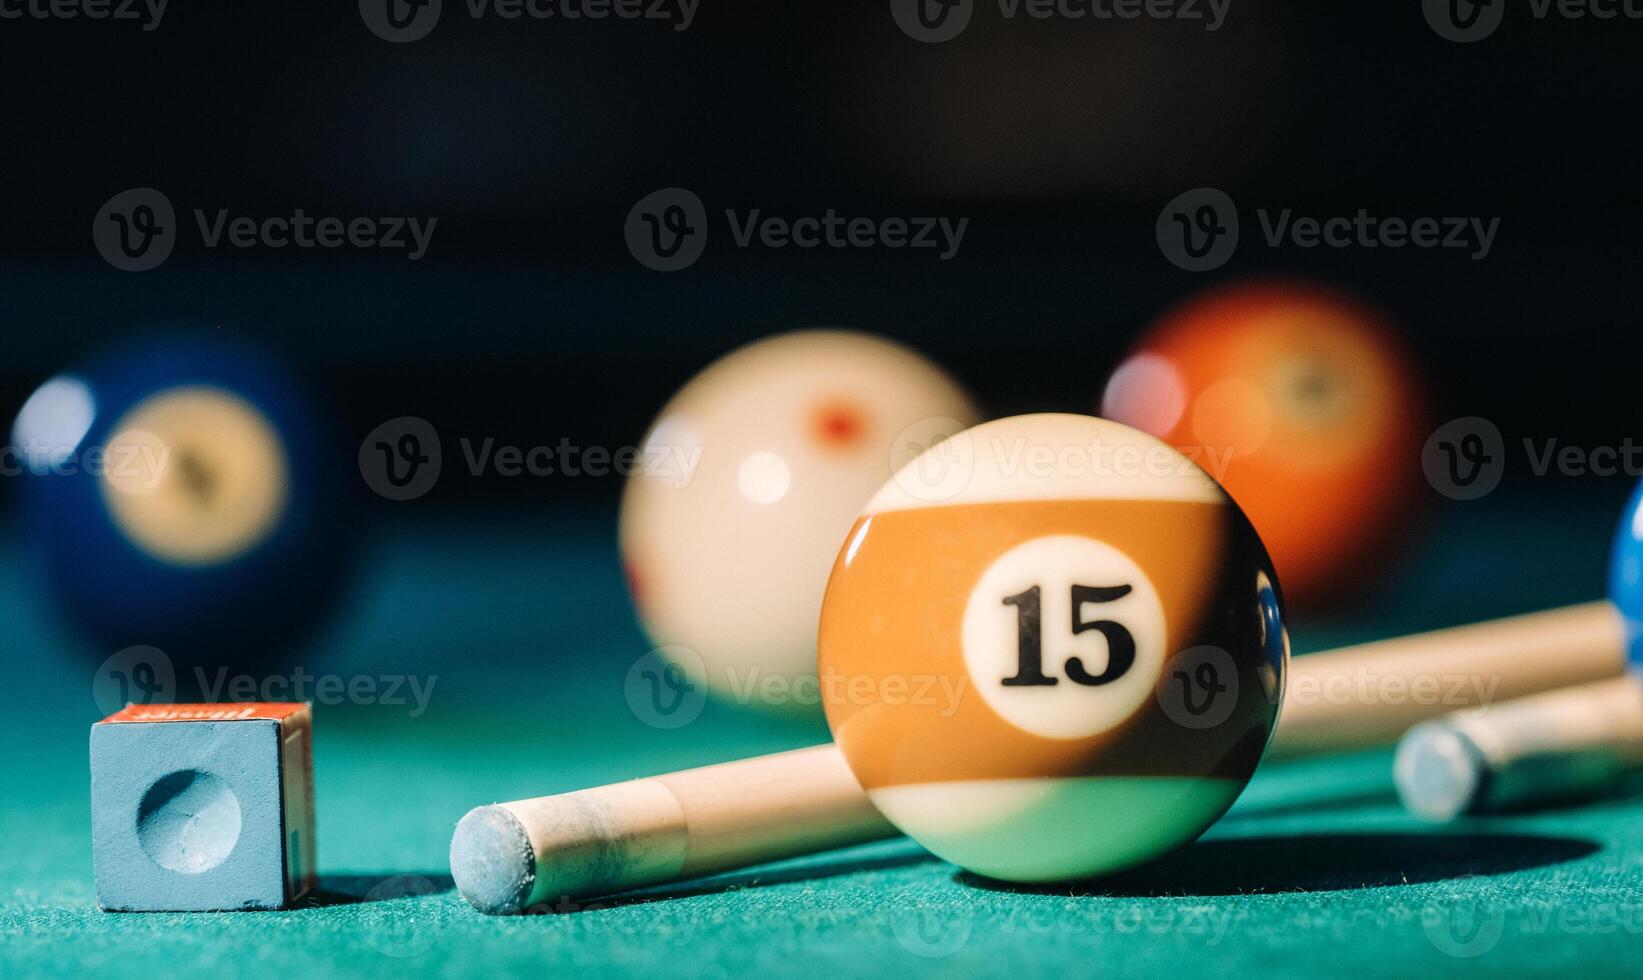 de bilhar mesa com verde superfície e bolas dentro a de bilhar clube.piscina jogos foto